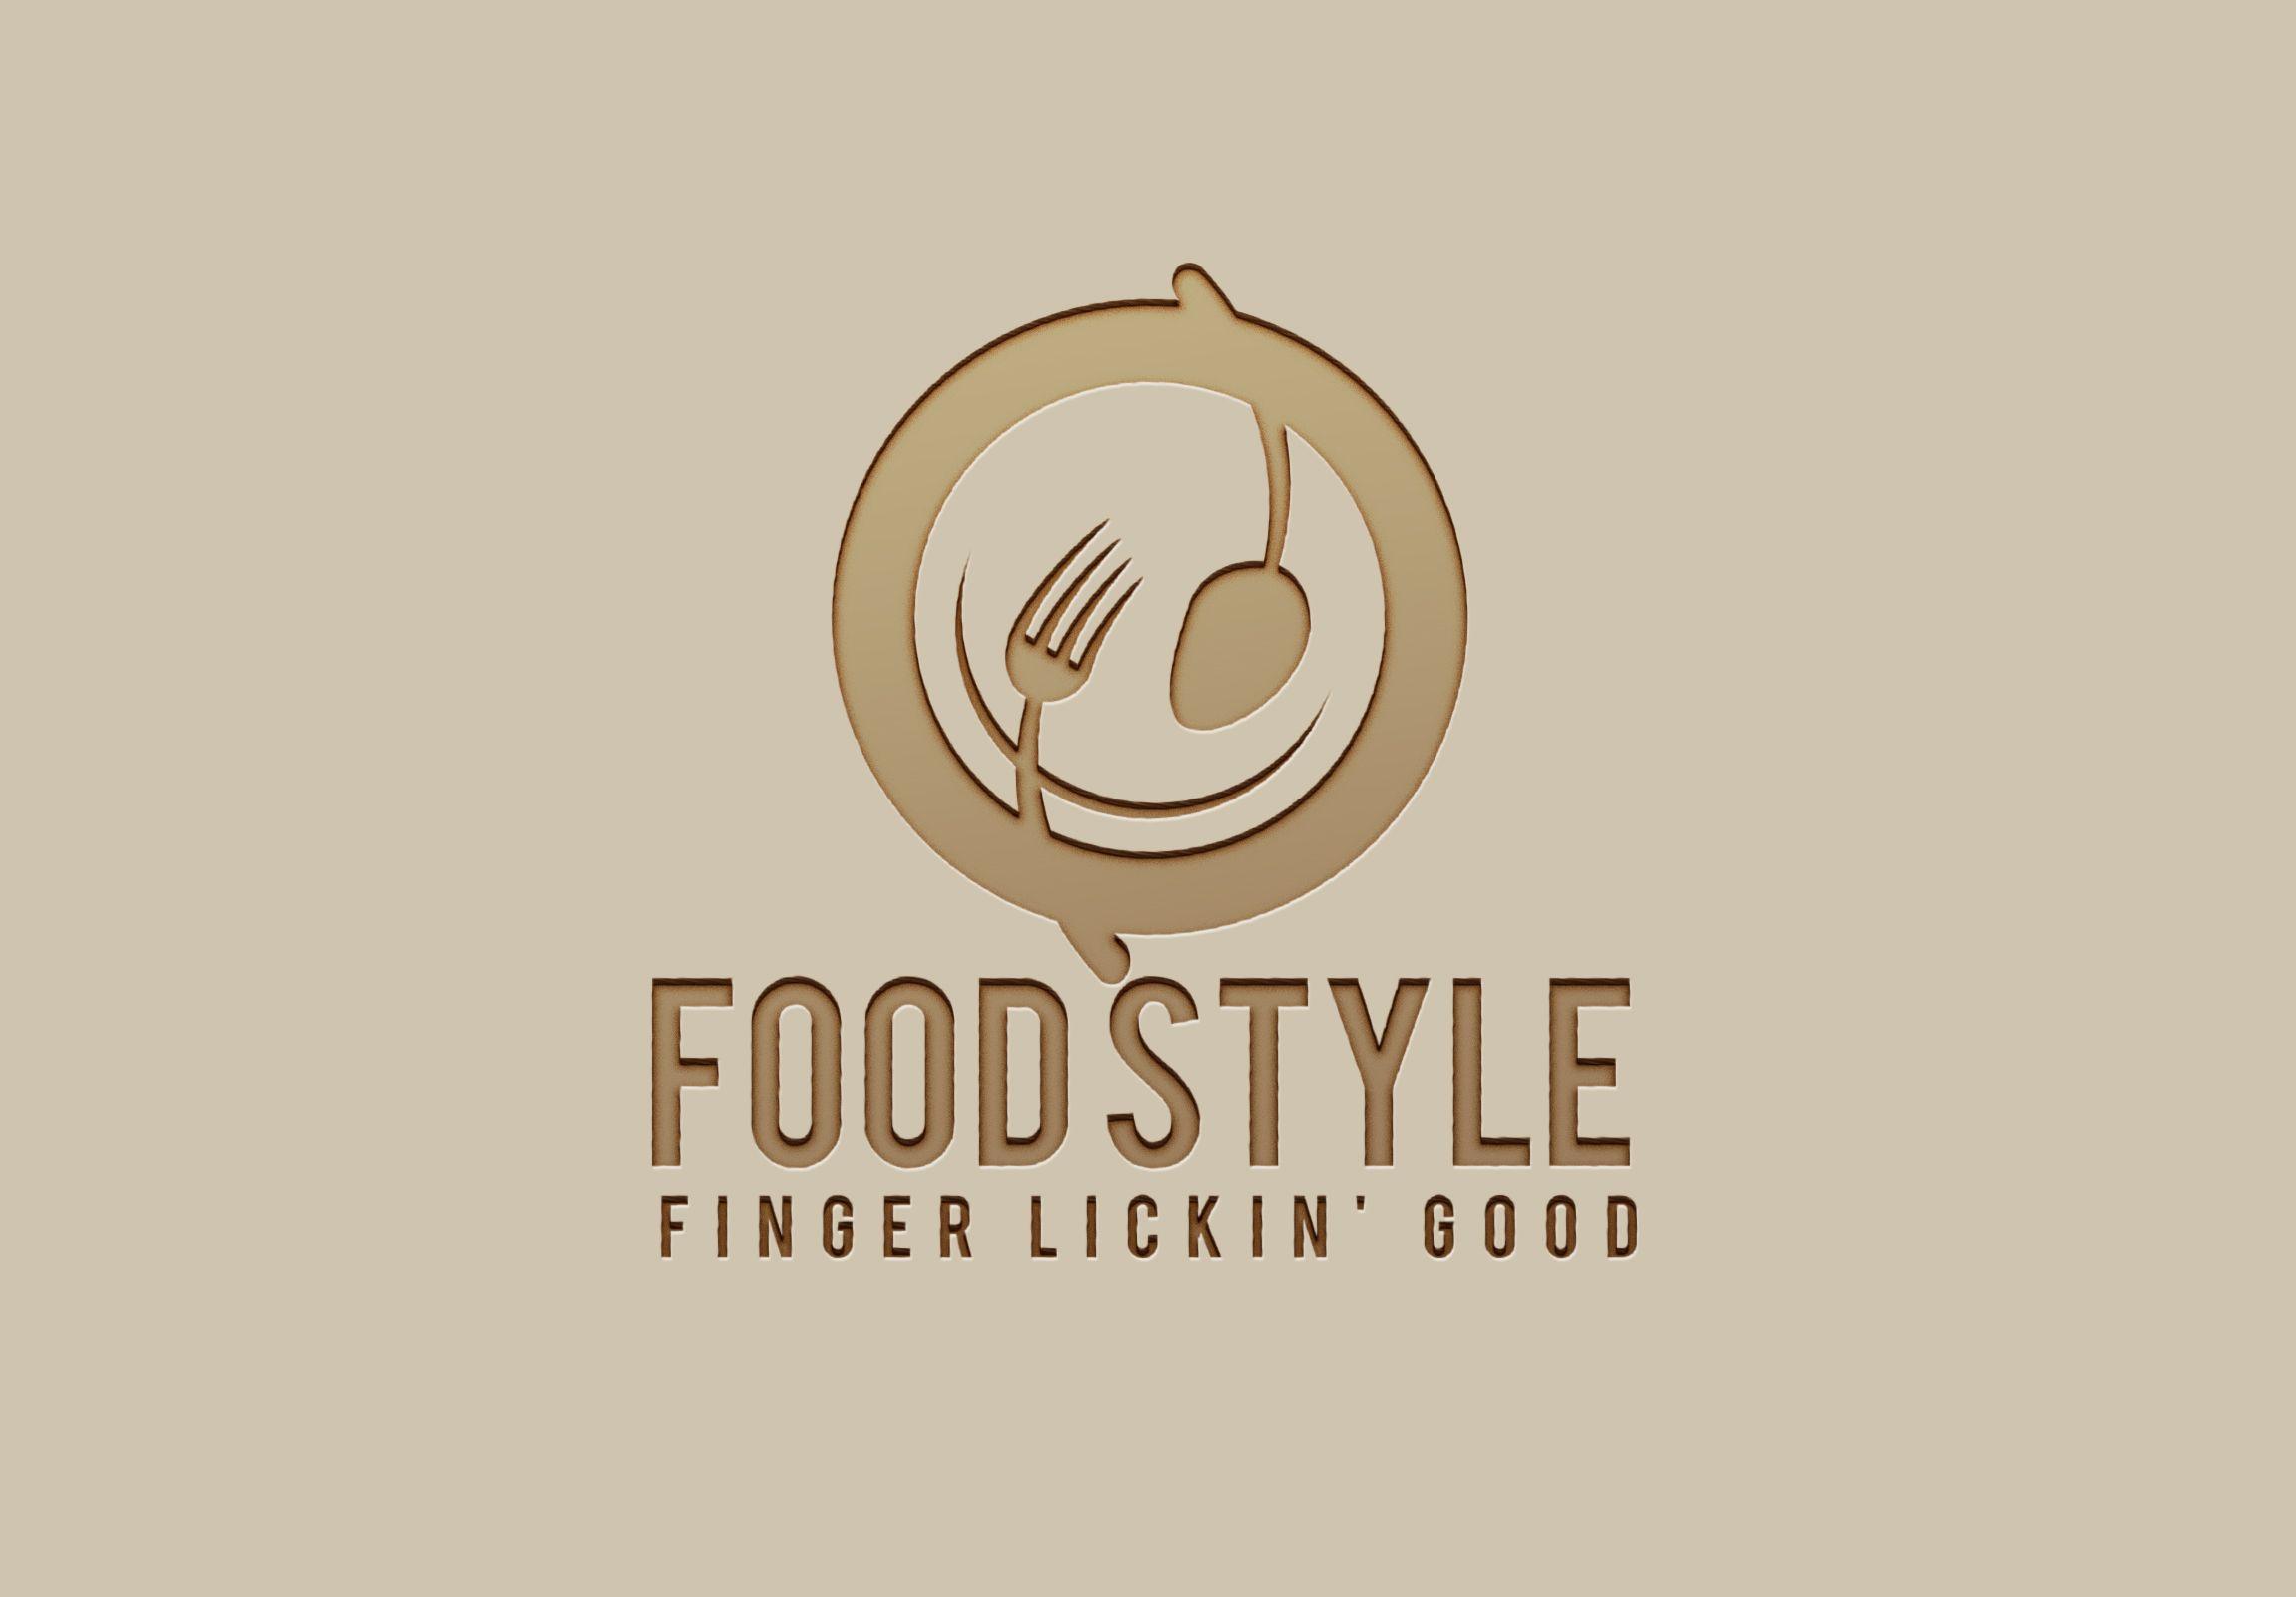 Business Blog Logo - Design Seafood, Fast Food, Restaurant, Food Blog business Logo for ...